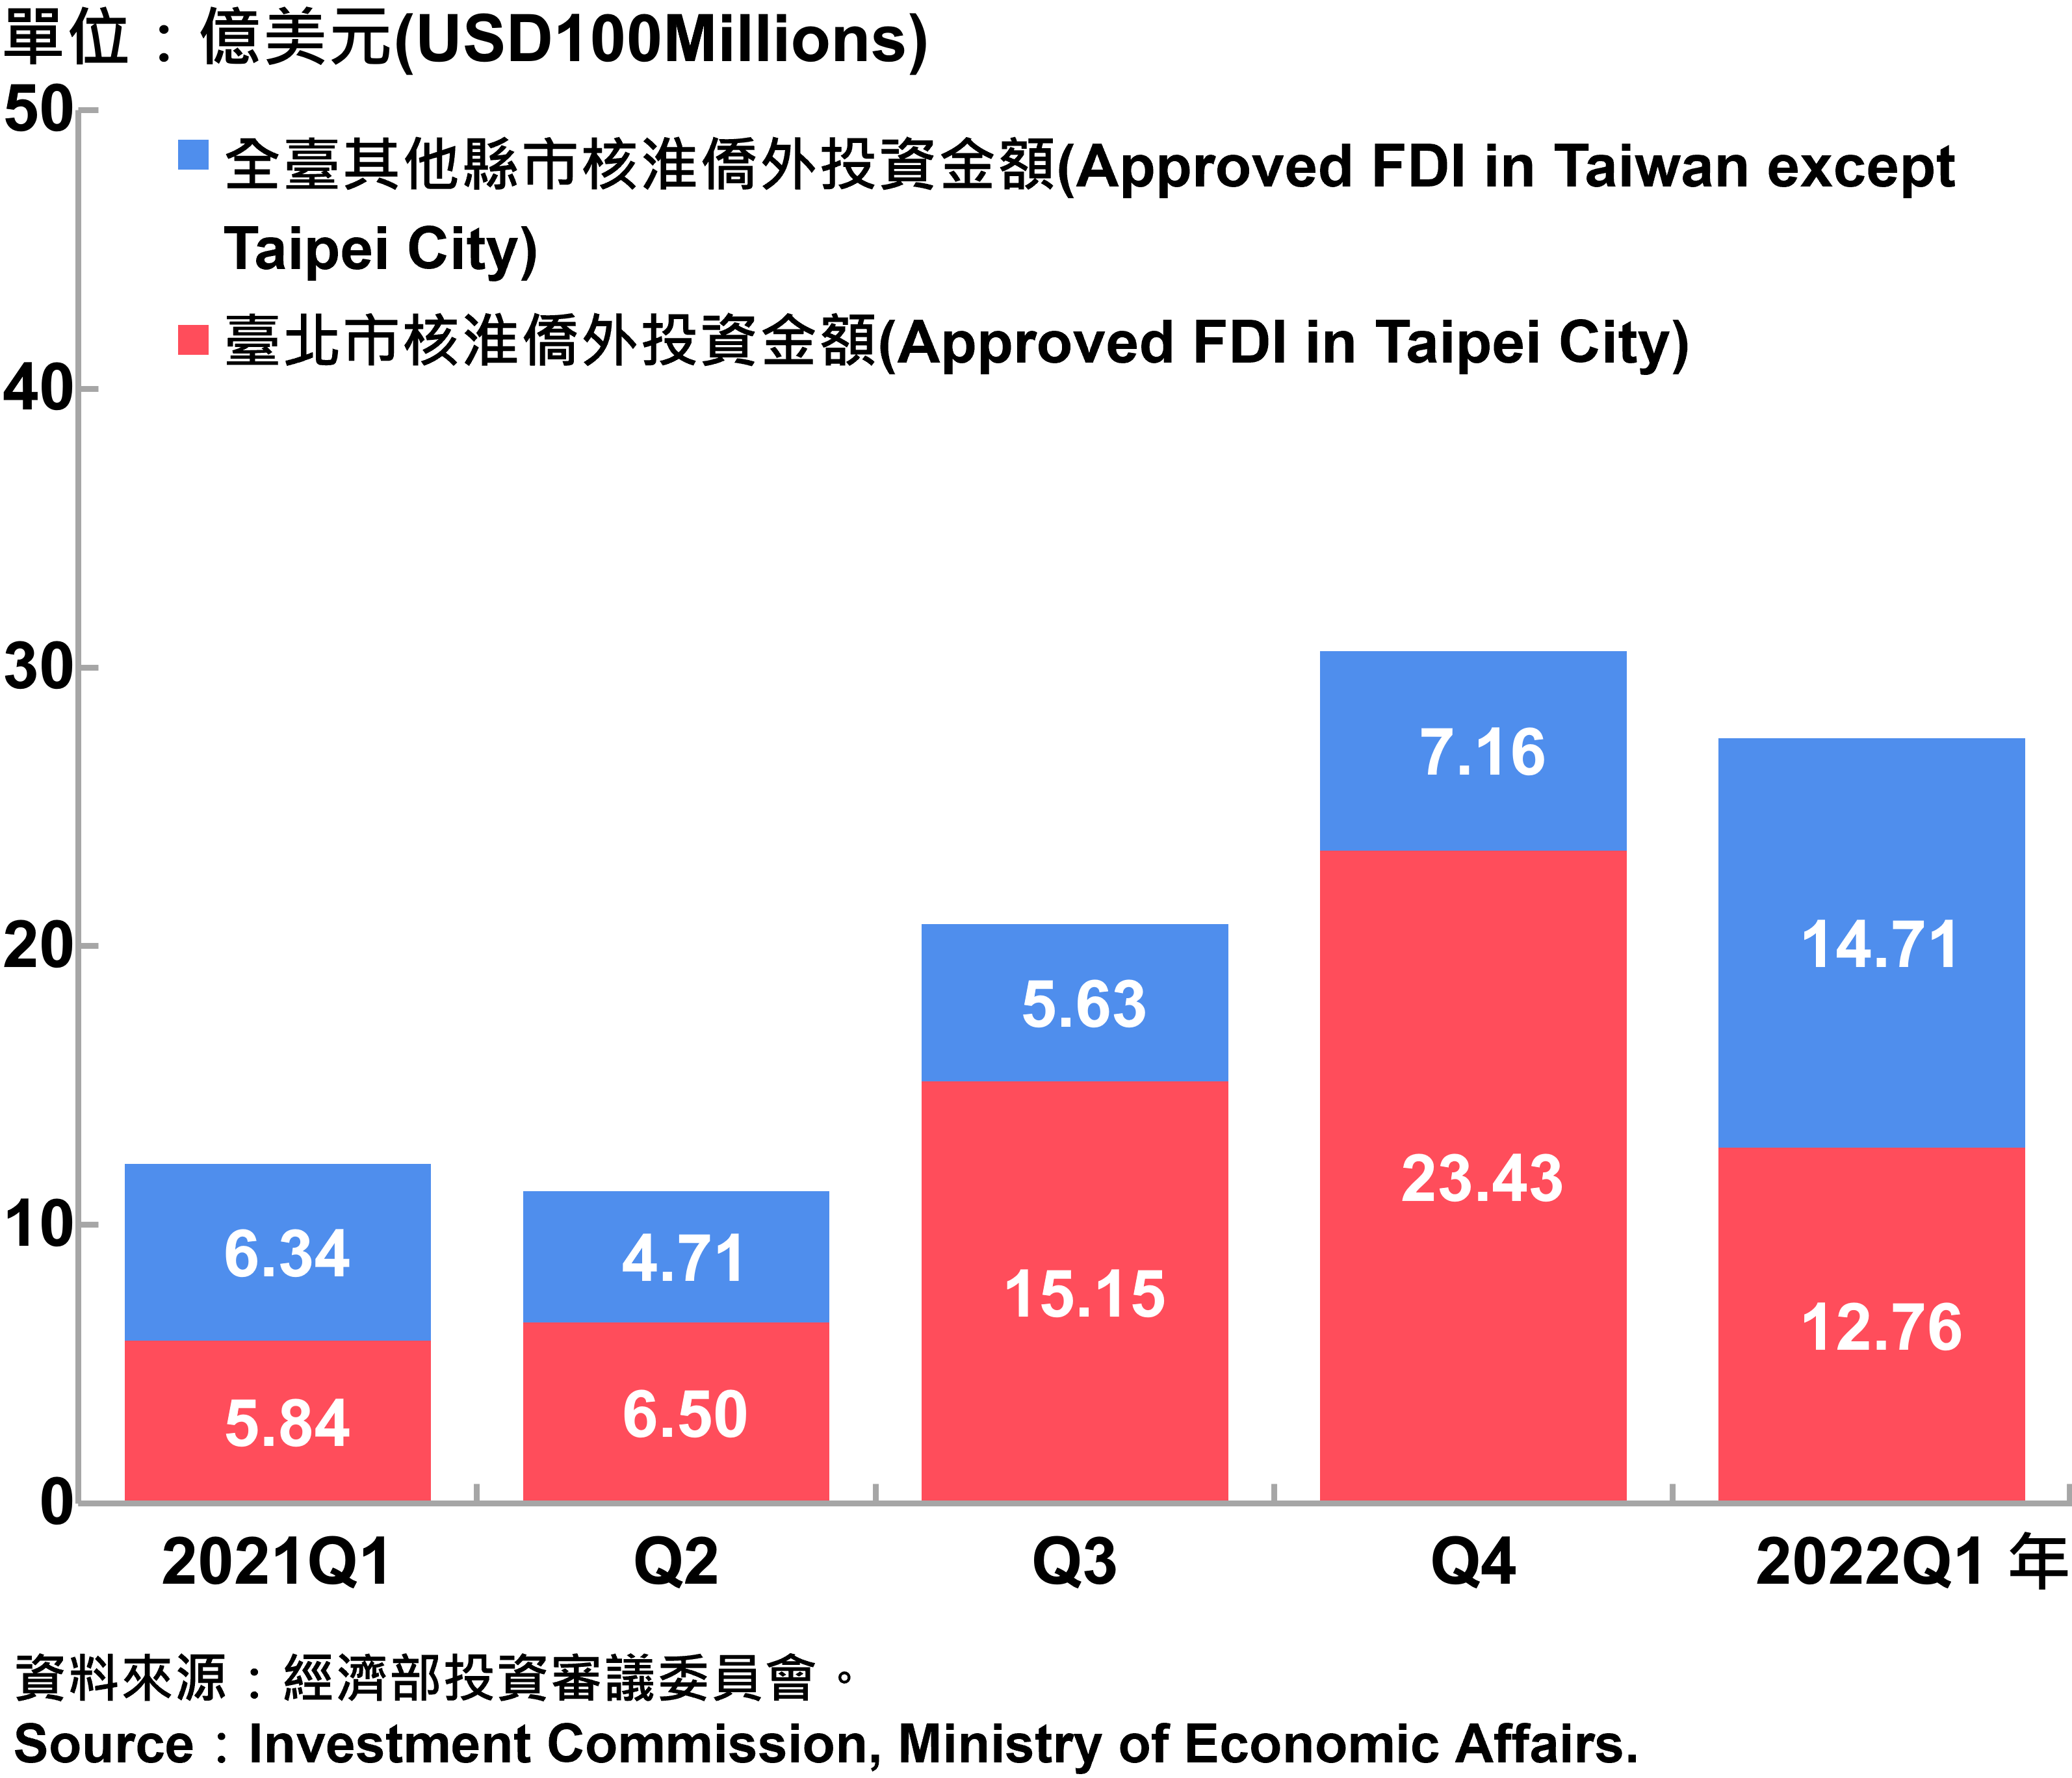 臺北市與全國僑外投資金額—2022Q1 Foreign Direct Investment（FDI）in Taipei City and Taiwan—2022Q1